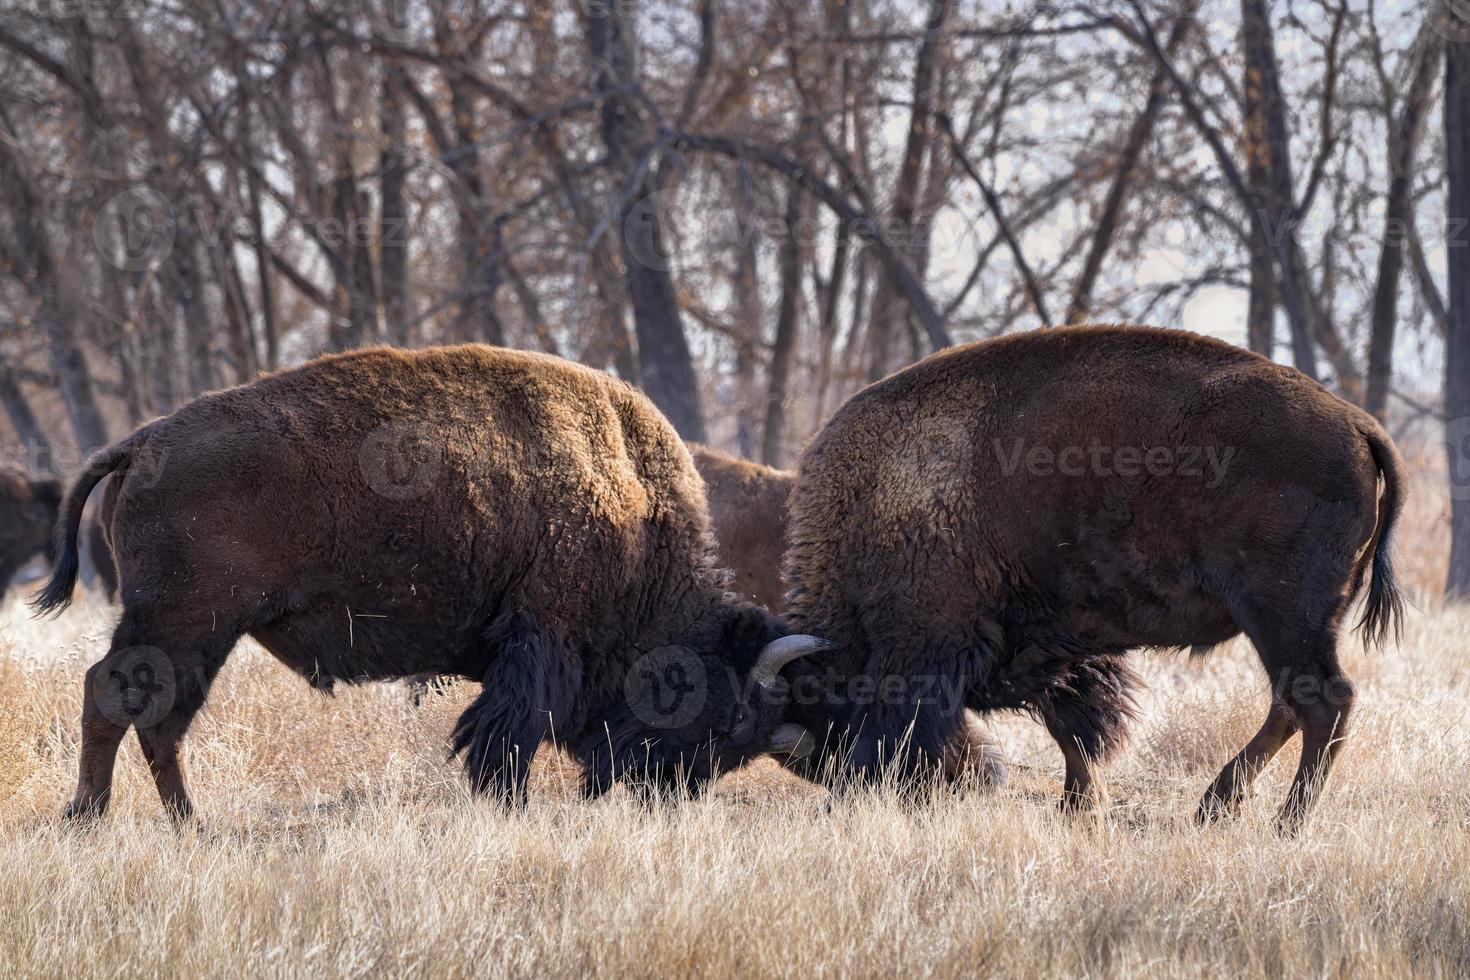 bisonte americano en las altas llanuras de colorado. dos toros ahorrando en un campo de hierba. foto